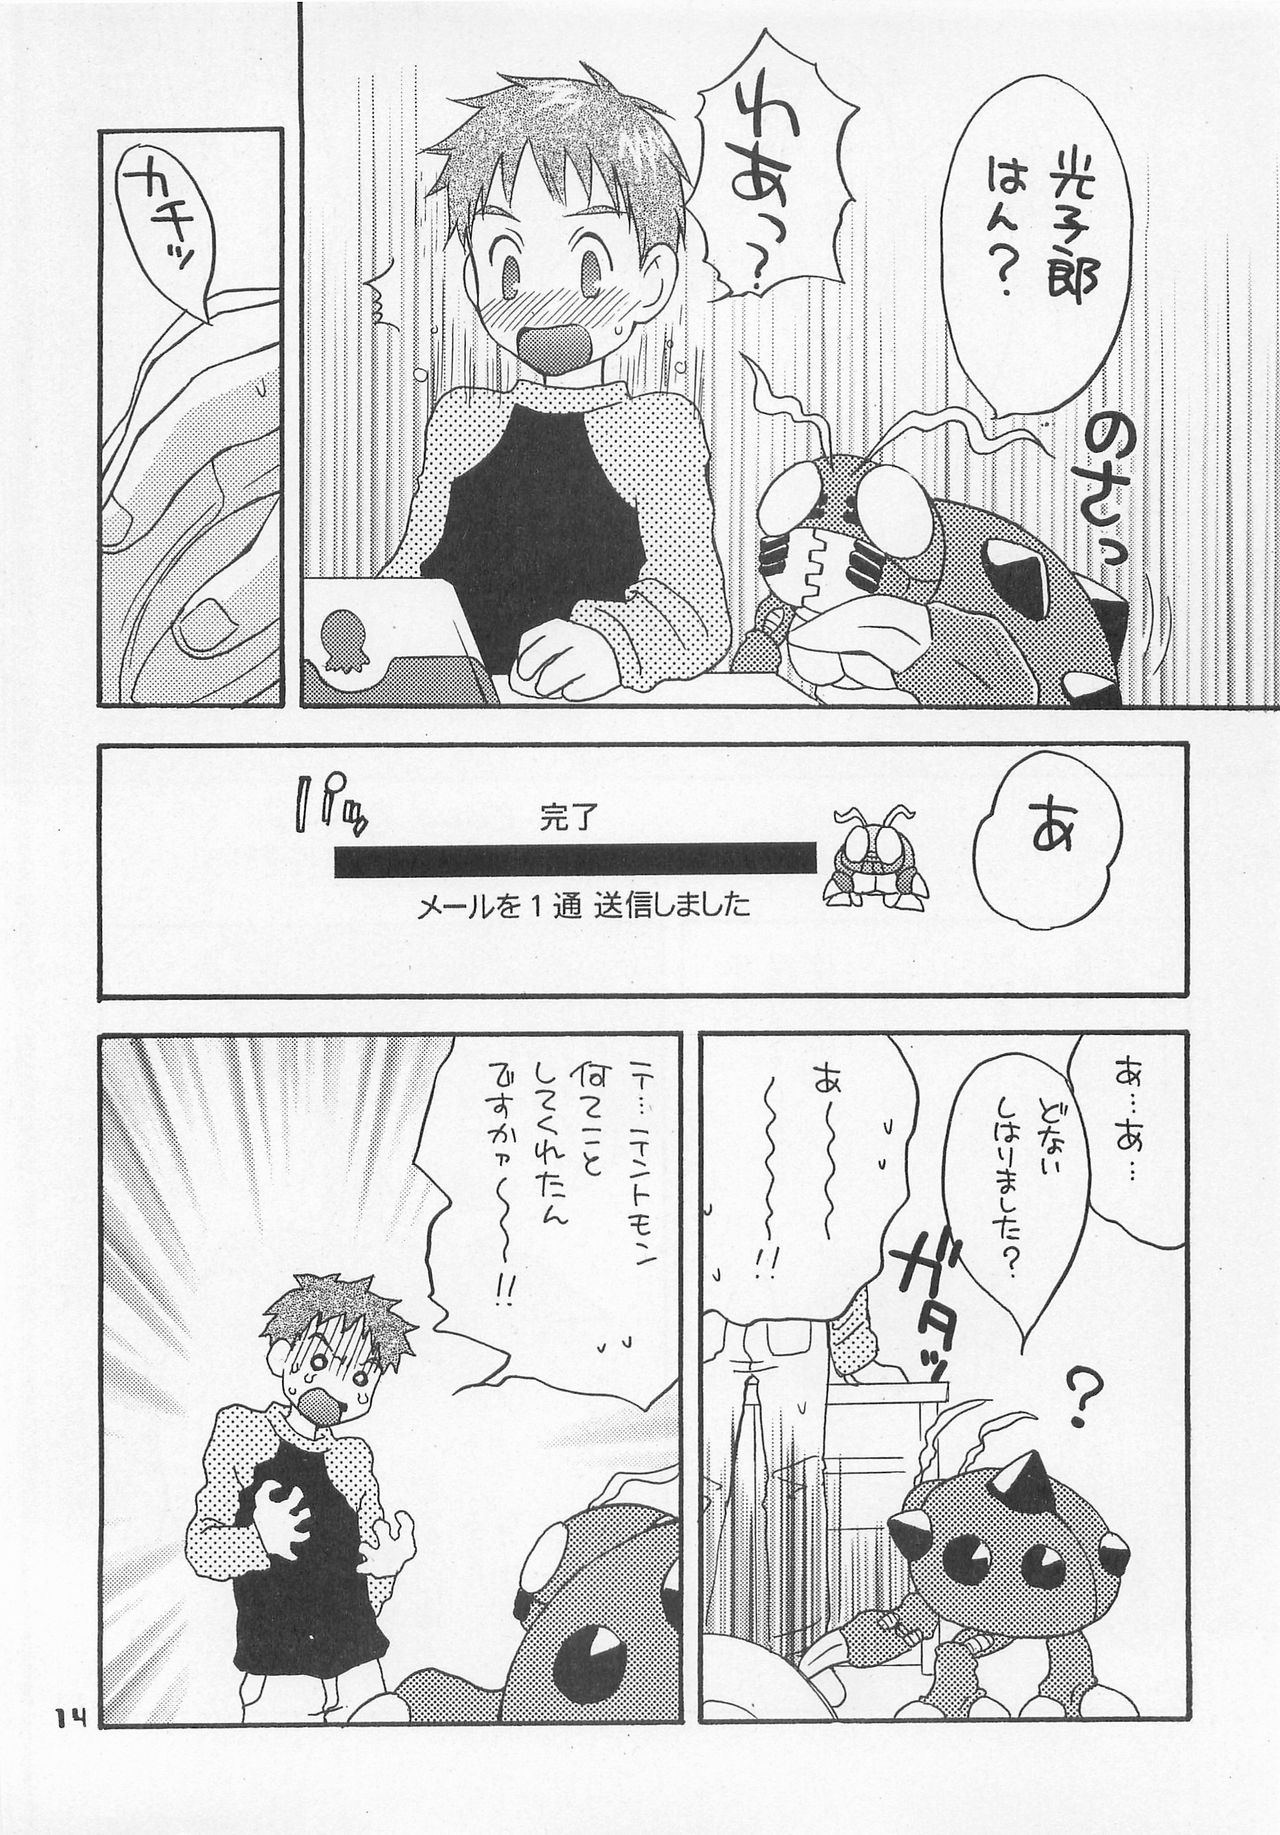 (HaruCC6) [Haniwa Mania, Kuru Guru DNA (Pon Takahanada, Hoshiai Hiro)] Jogress Daihyakka (Digimon Adventure 02) page 13 full